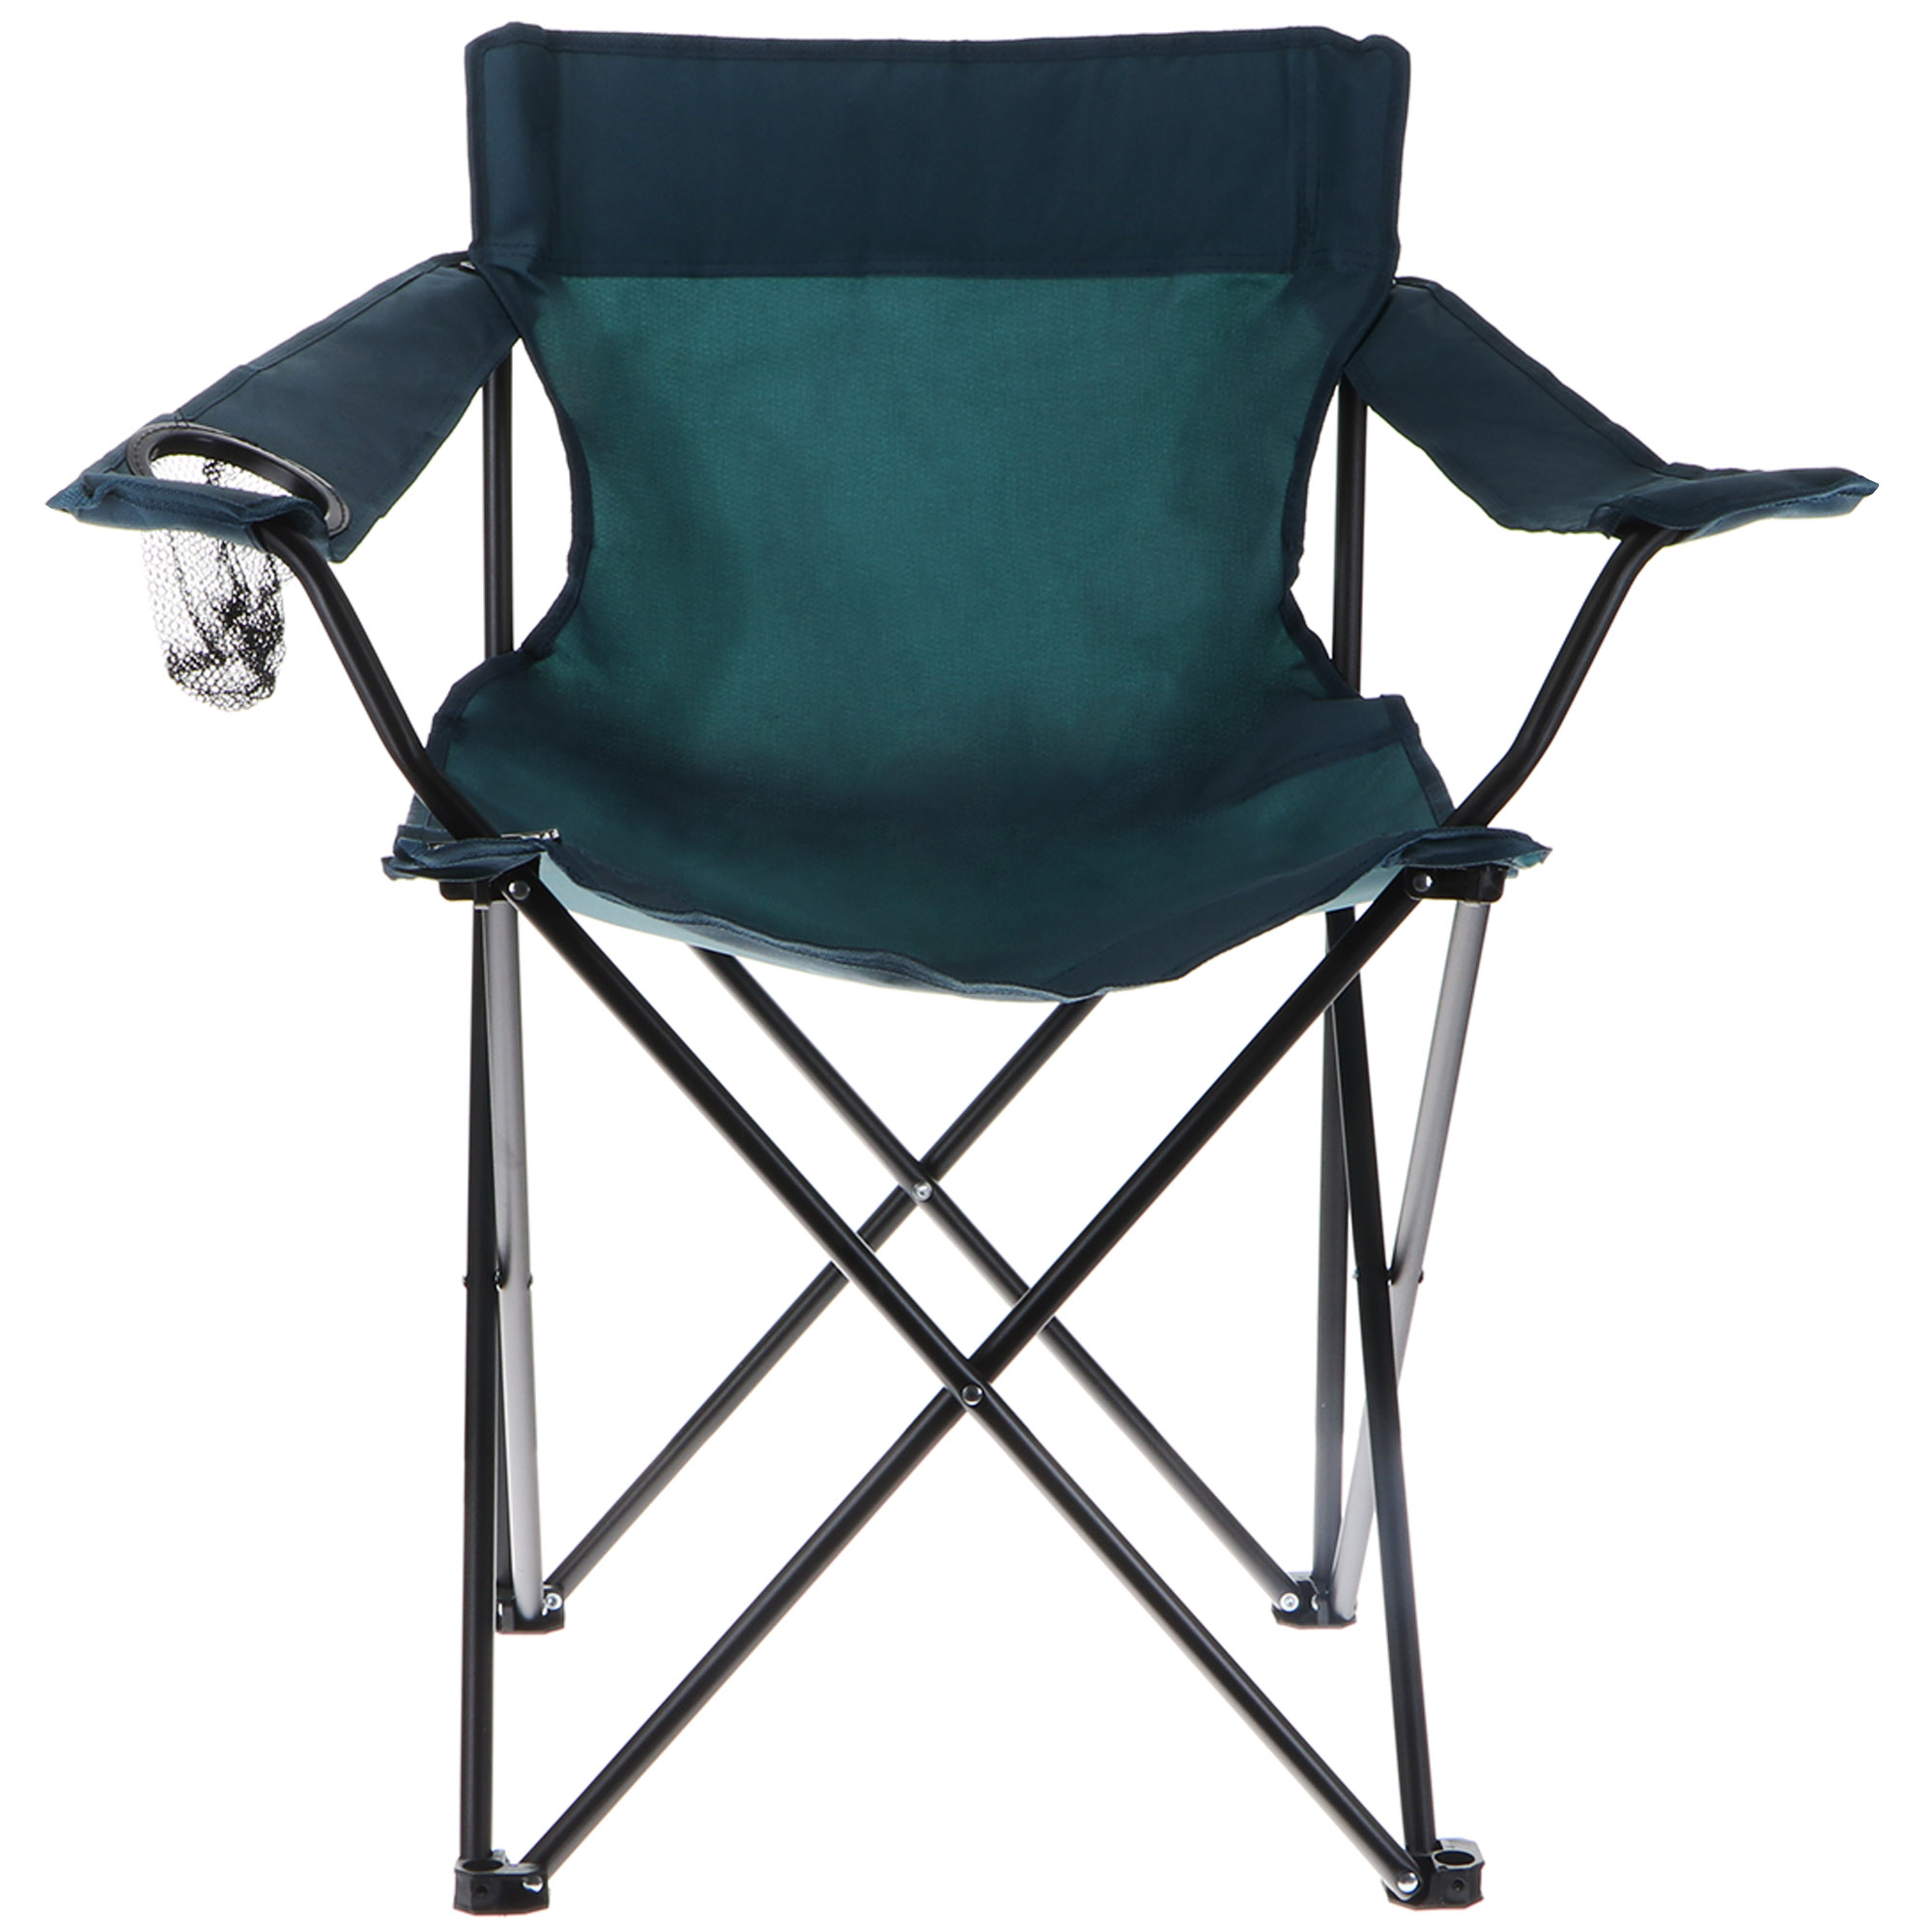 Кресло складное Koopman camping 81x51x42cm, цвет черный